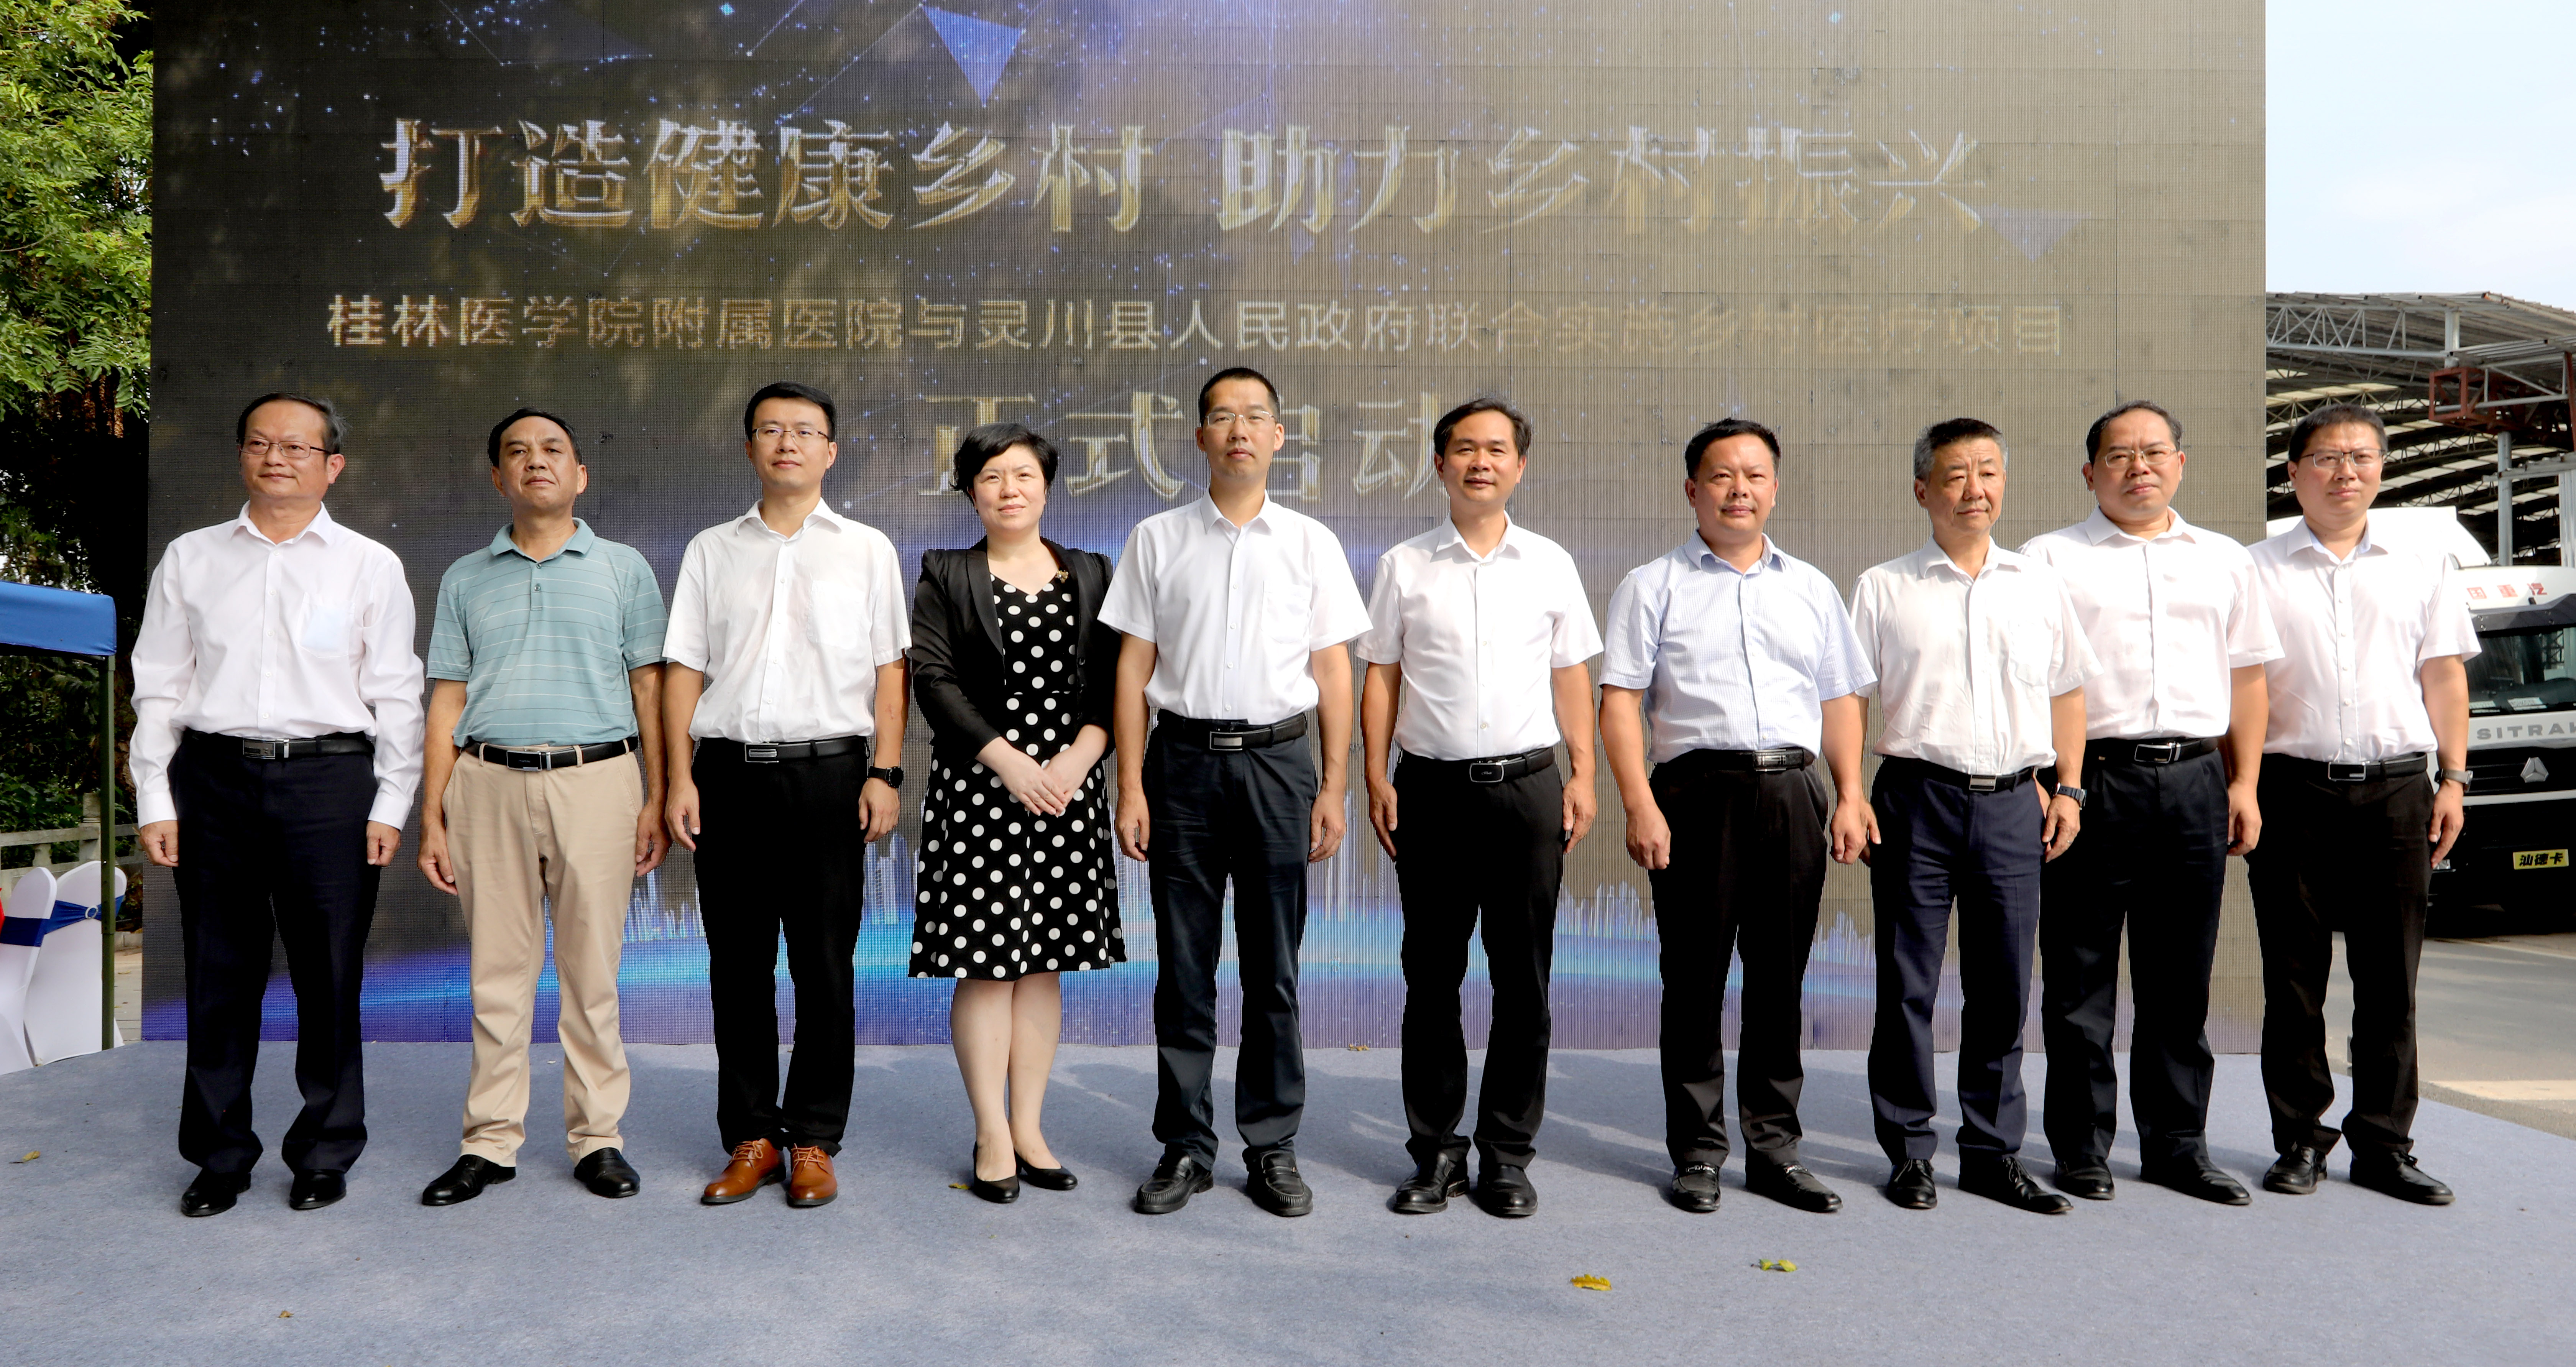 桂林医学院附属医院与灵川县人民政府联合实施乡村医疗项目正式启动